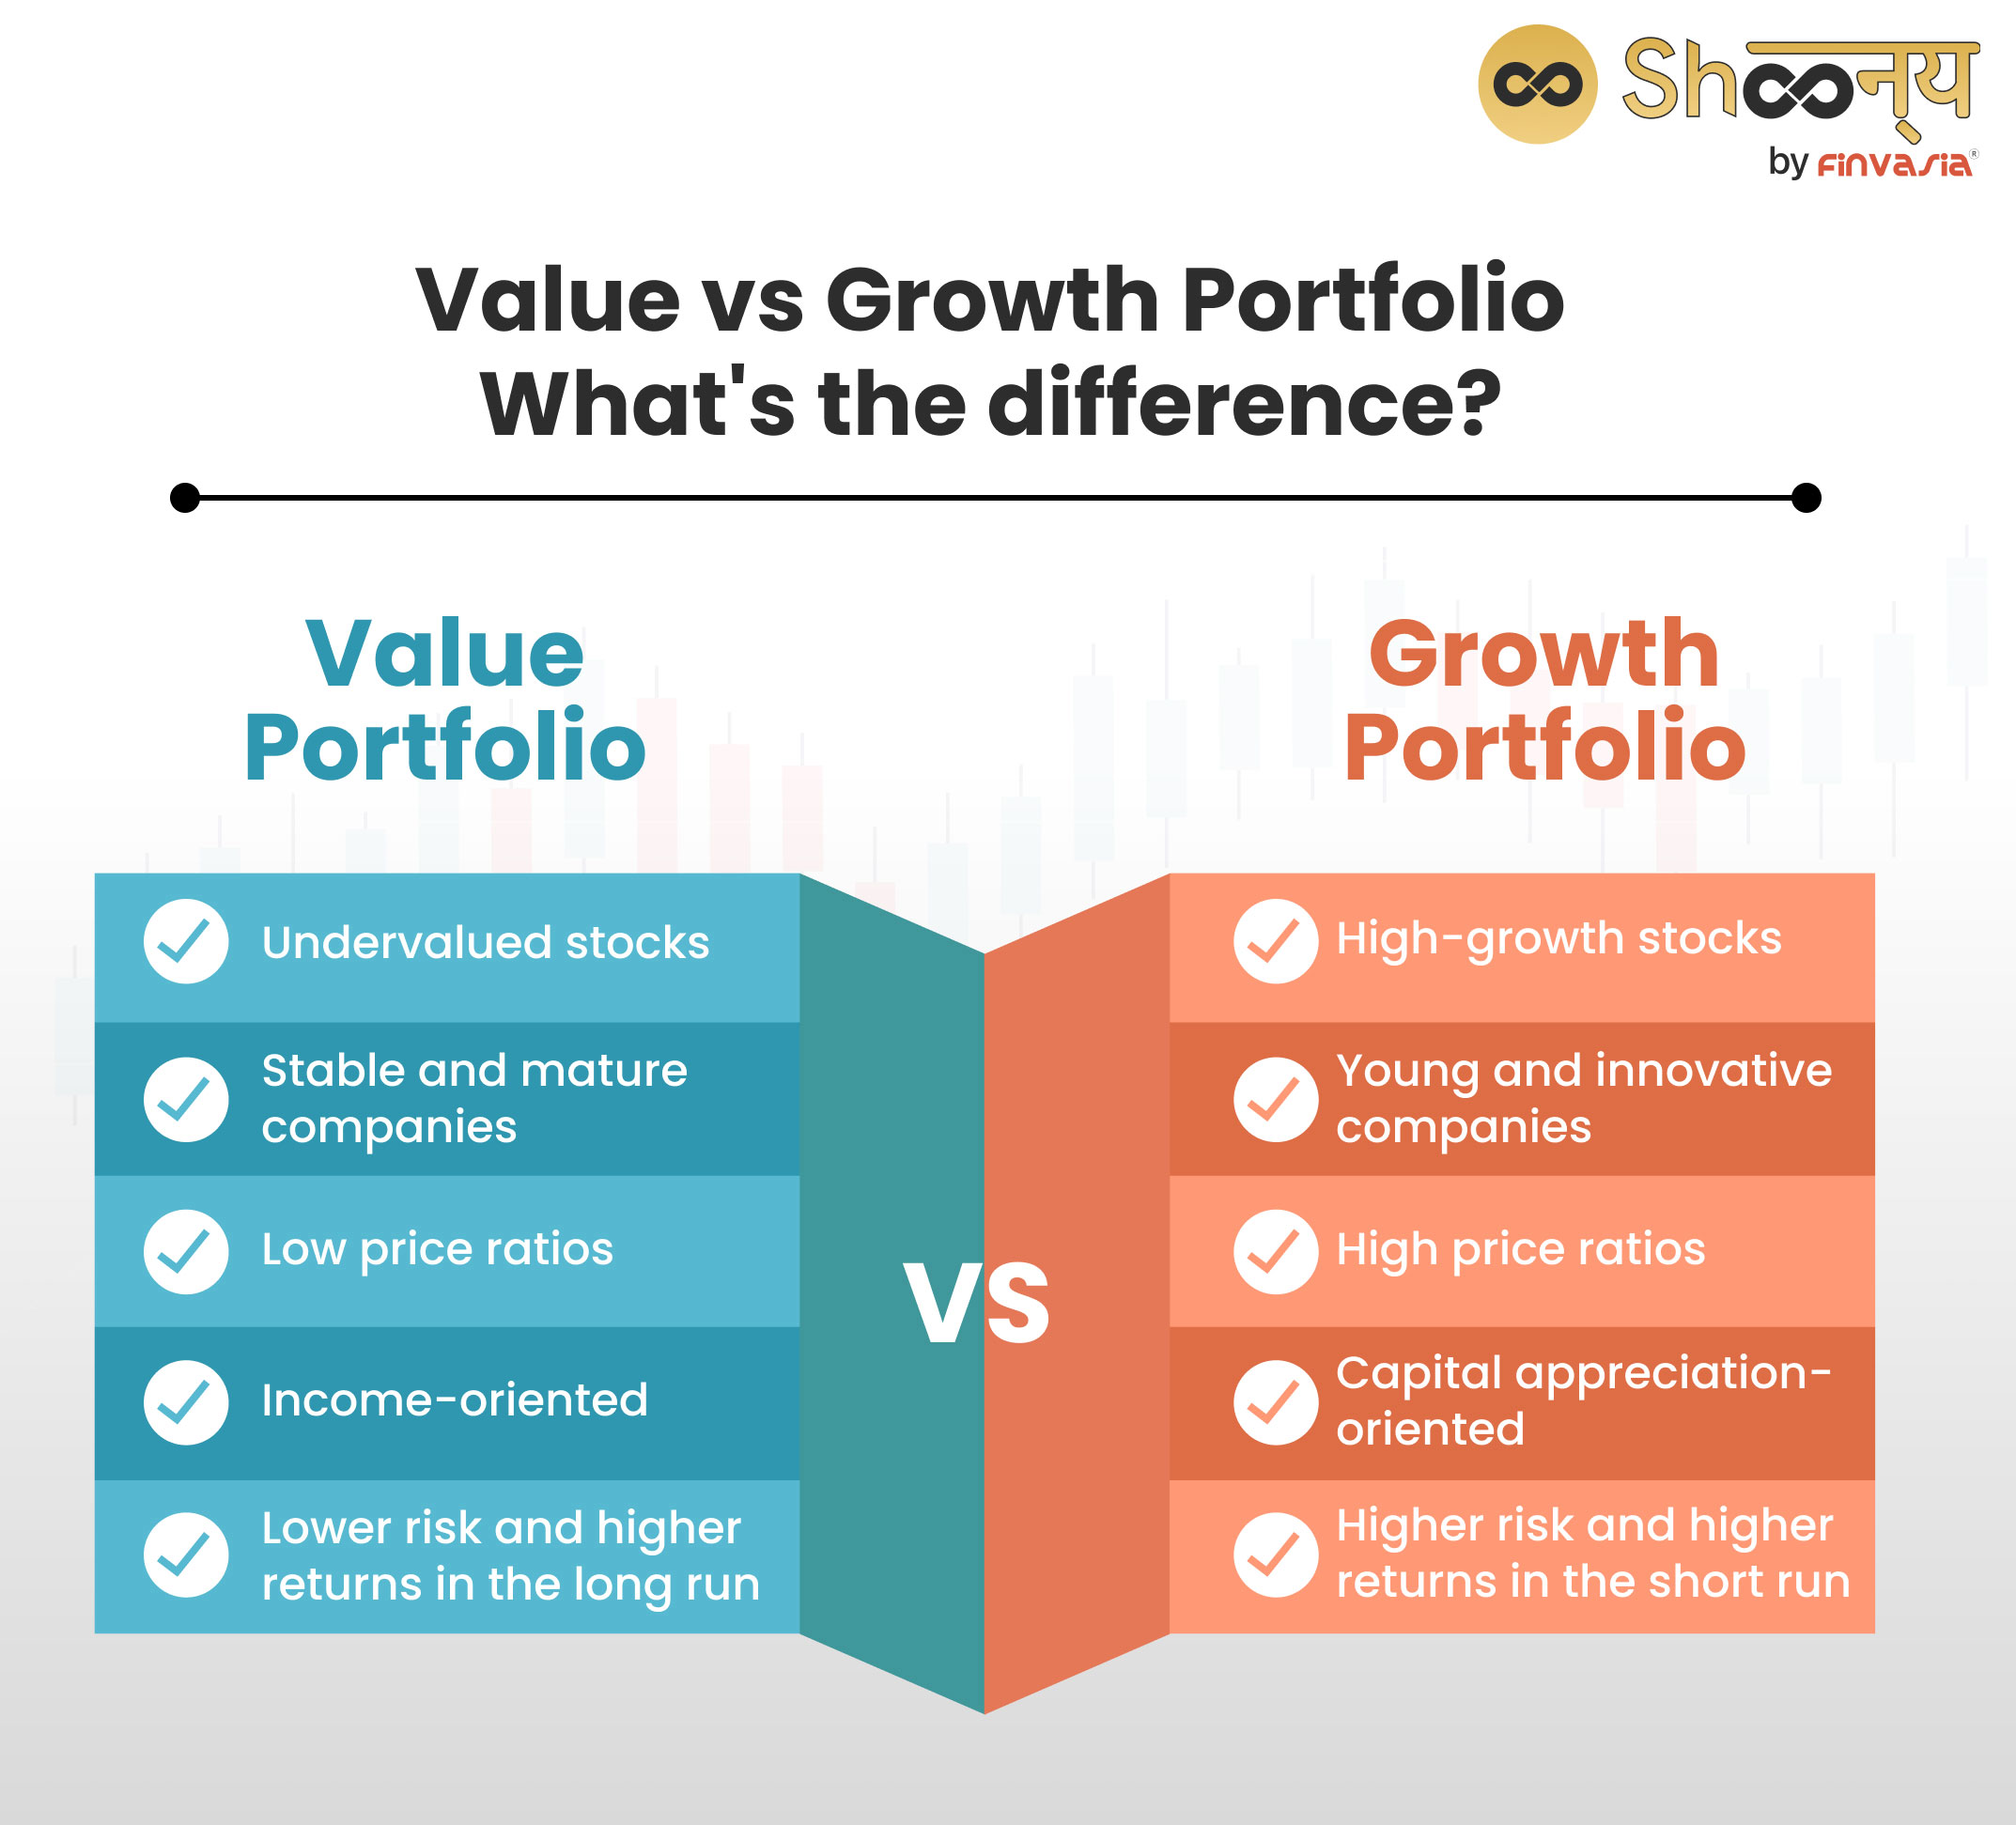 Value Portfolio vs Growth Portfolio
